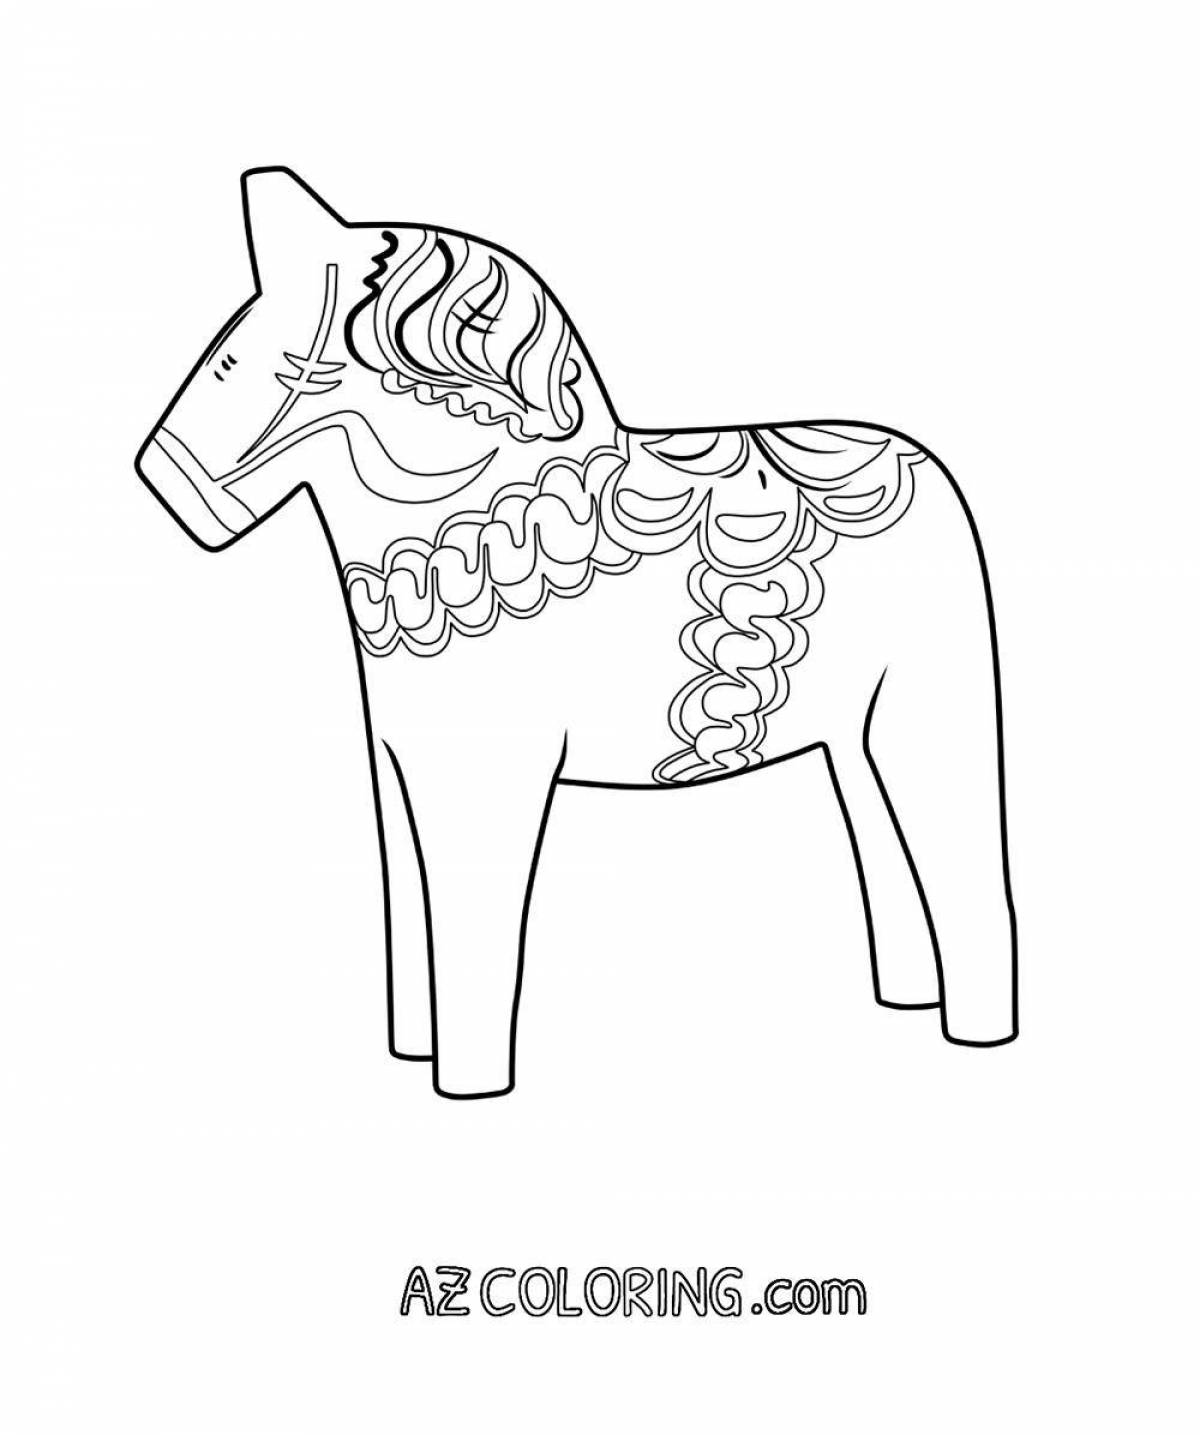 Городецкая роспись конь раскраска для детей